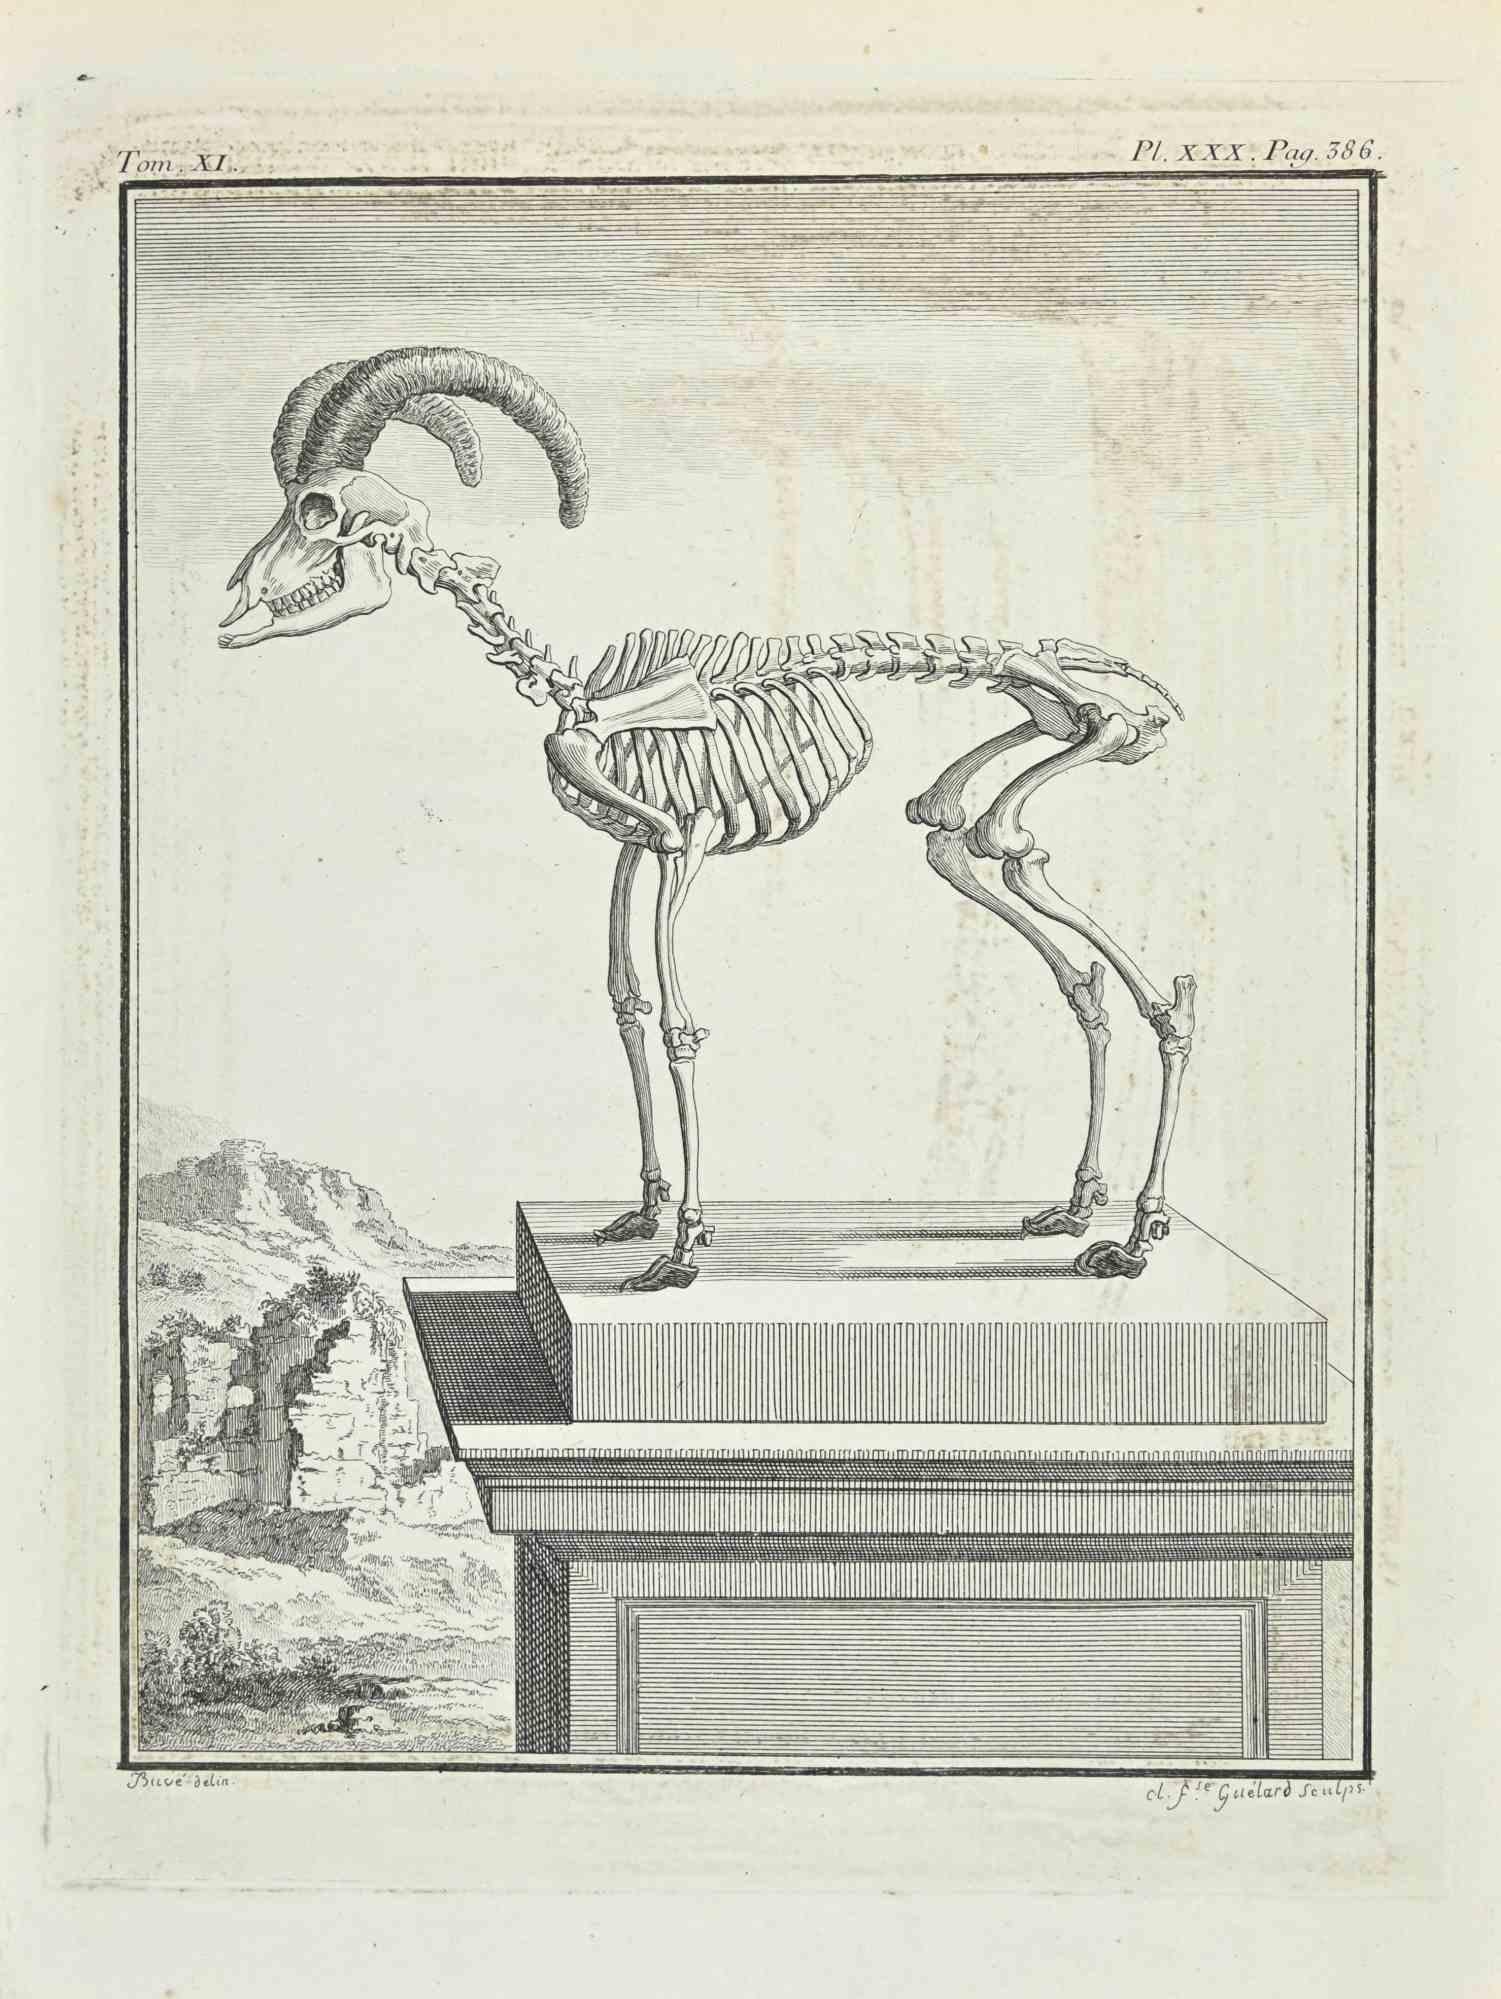 L'anatomie est une gravure réalisée par Gaillard en 1771.